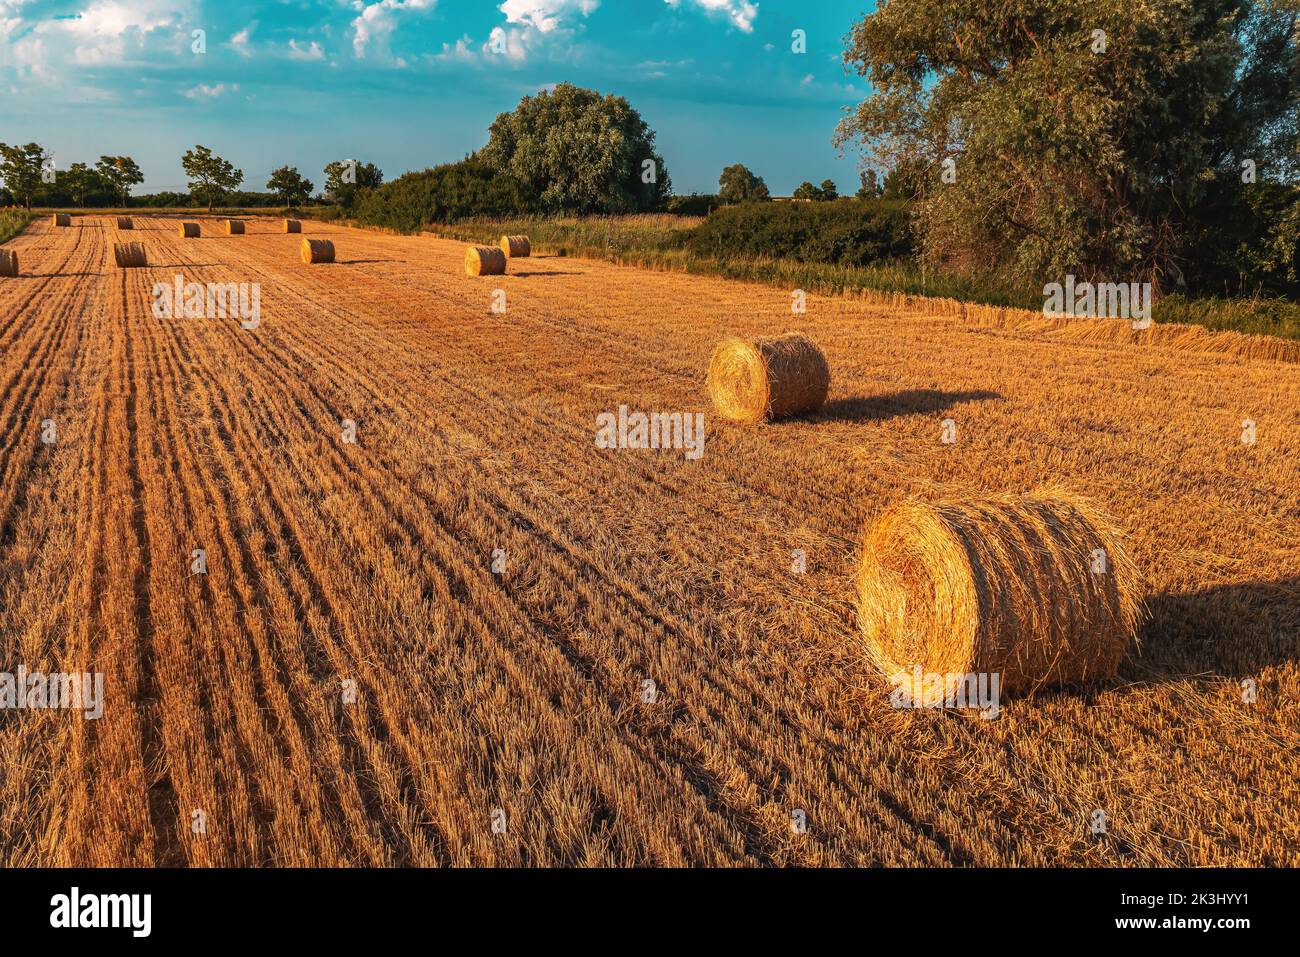 Balles de foin rondes en forme de cylindre dans le champ de blé cultivé après la récolte, vue en grand angle de drone pov Banque D'Images